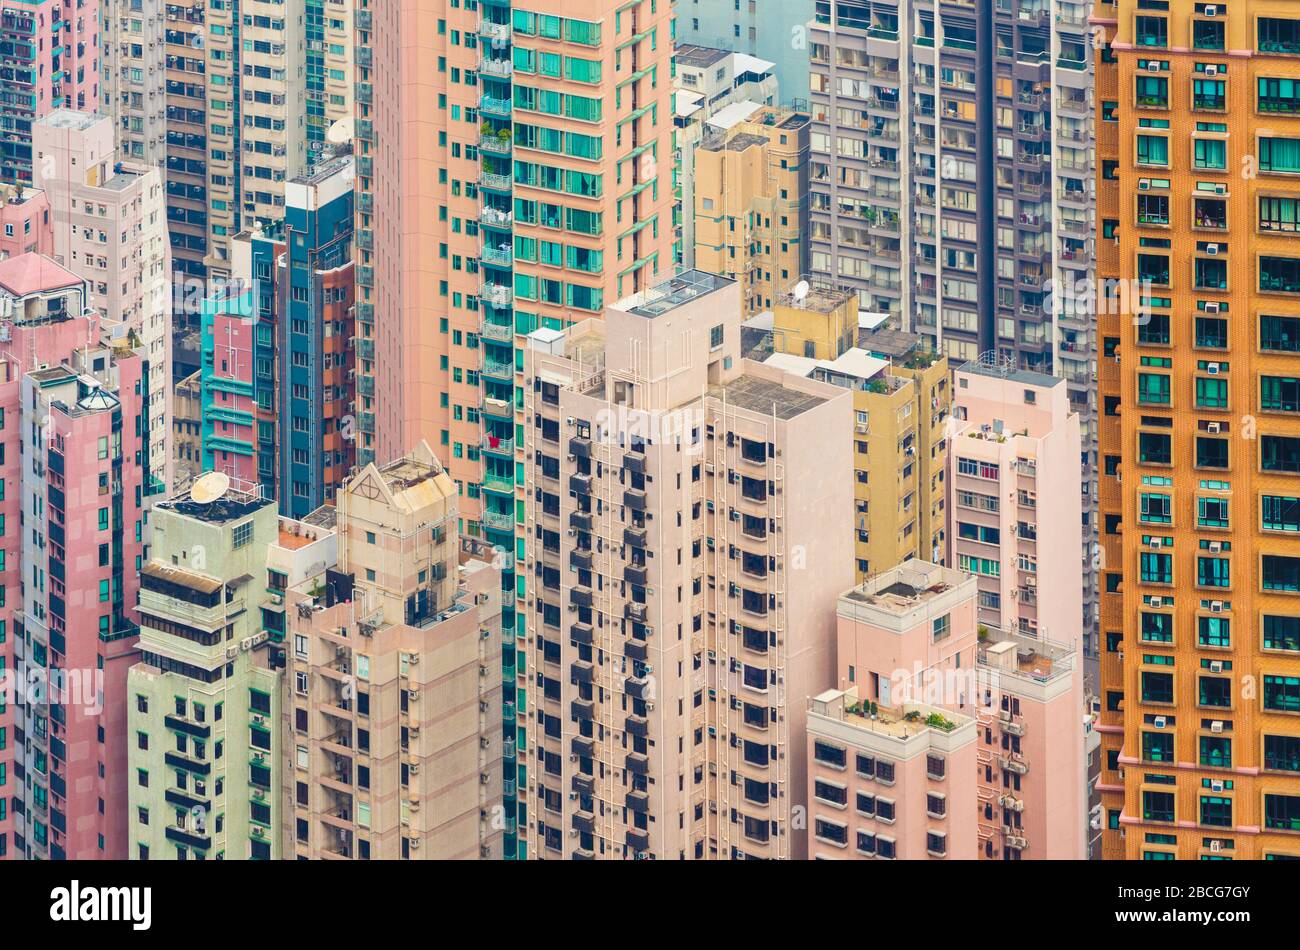 Hong Kong, China.  Skyscraper apartments.  Urban density. Stock Photo